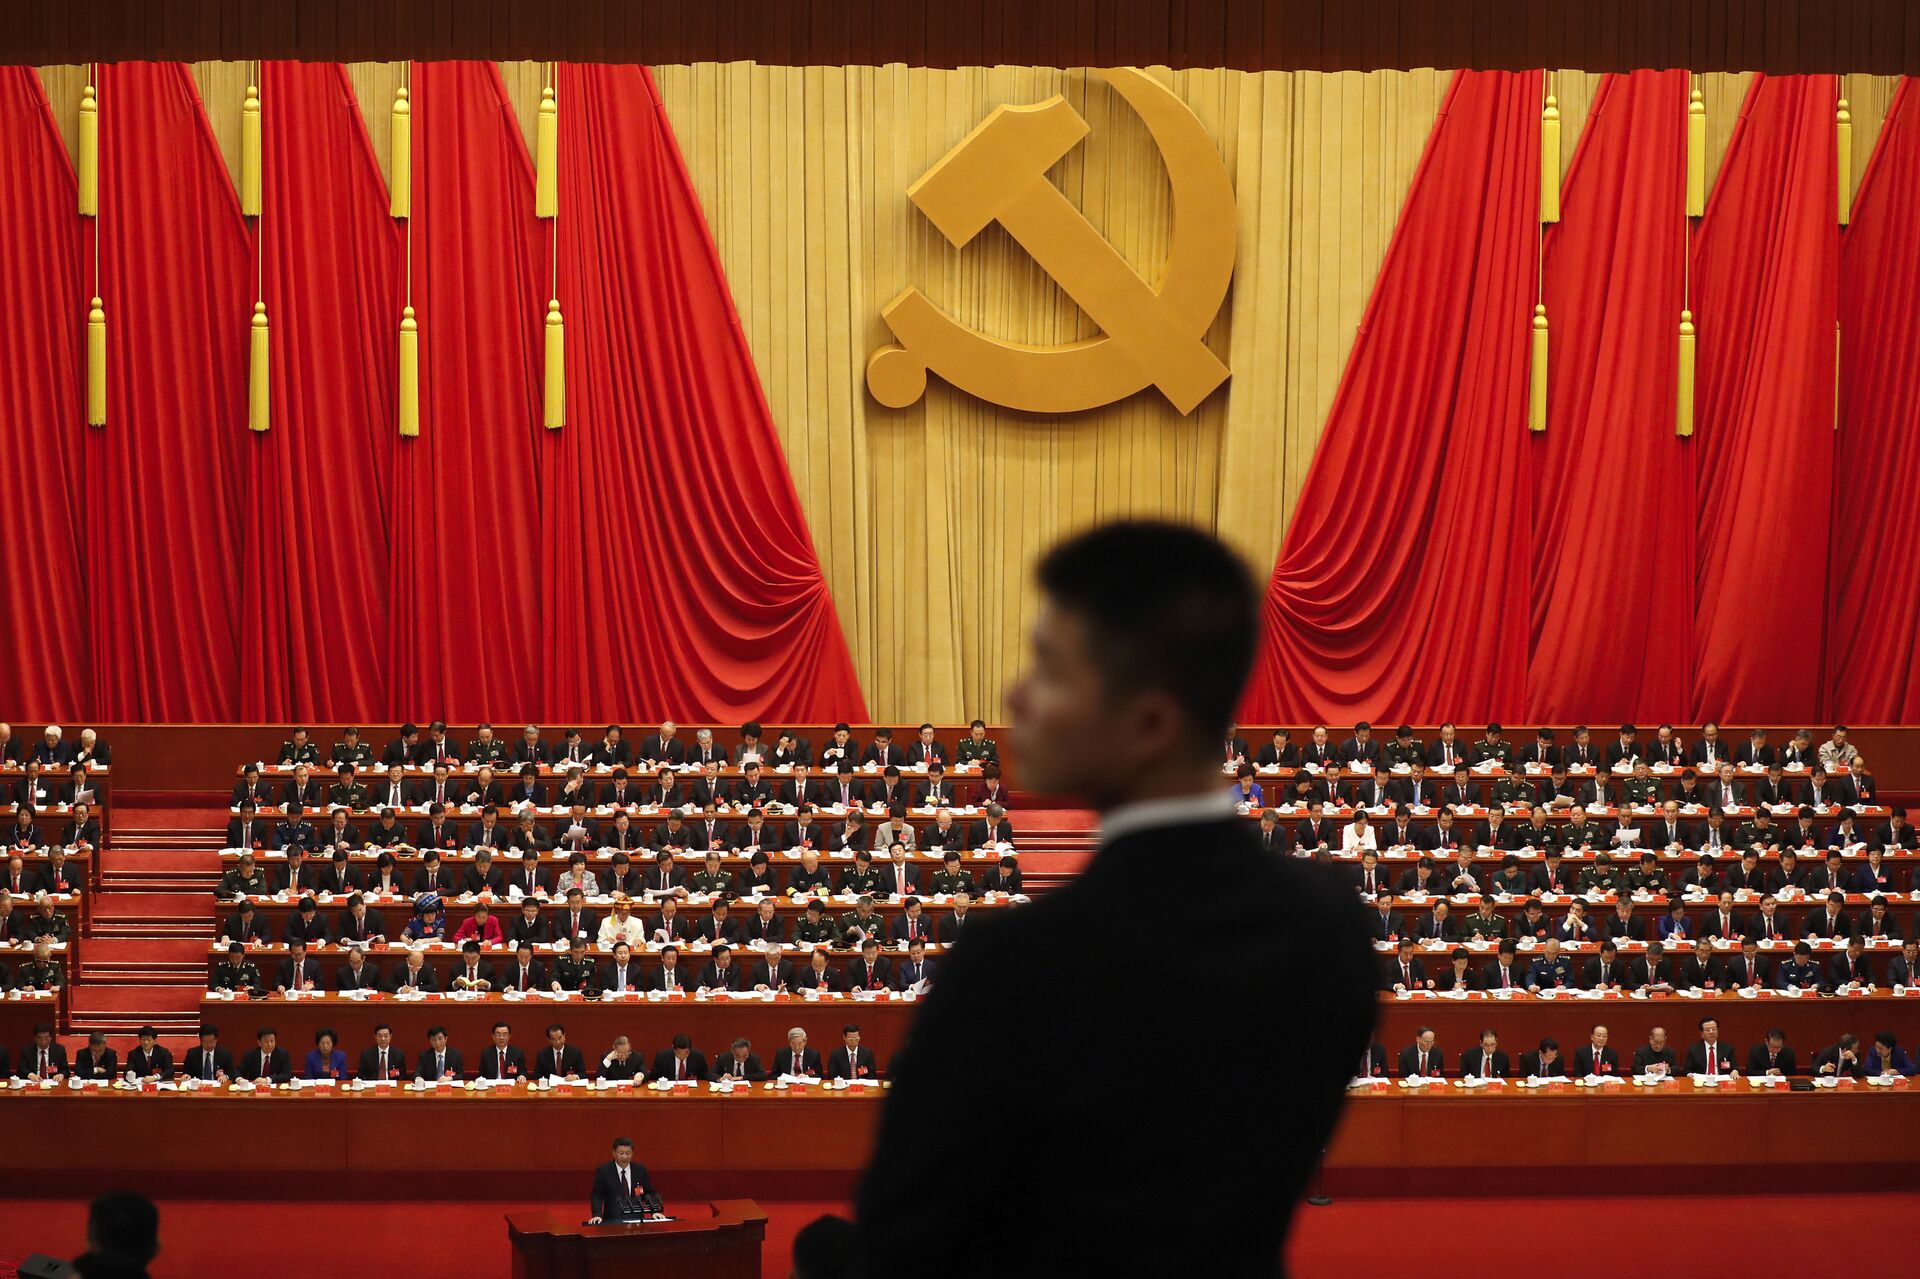 Војник стоји током говора кинеског председника Си Ђинпинга на церемонији отварања 19. конгреса Комунистичке партије у Пекингу - Sputnik Србија, 1920, 18.03.2022